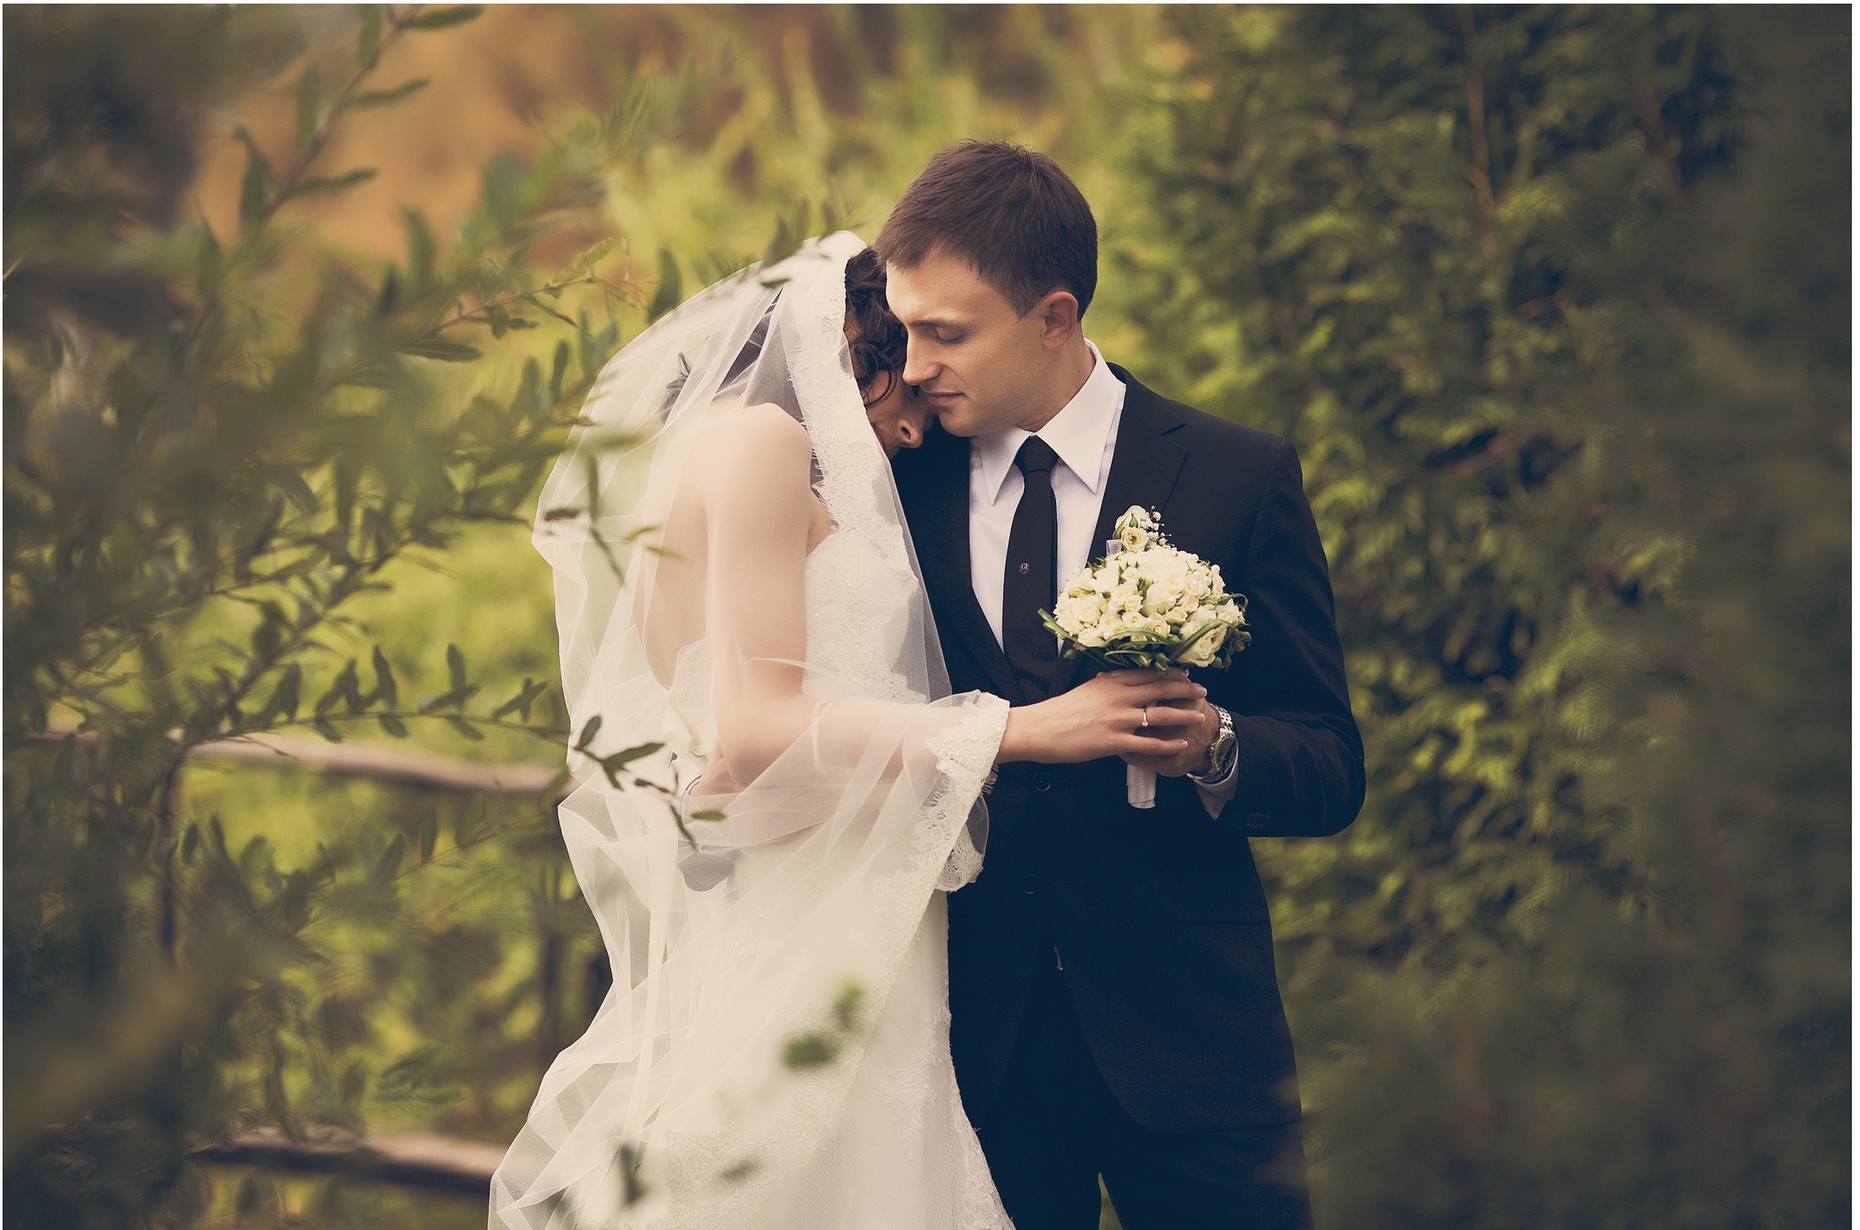 Для оплачиваемой фотосъемки свадебной Love Story нужны профессиональные модели - девушки и парни. Кастинг, Одесса.